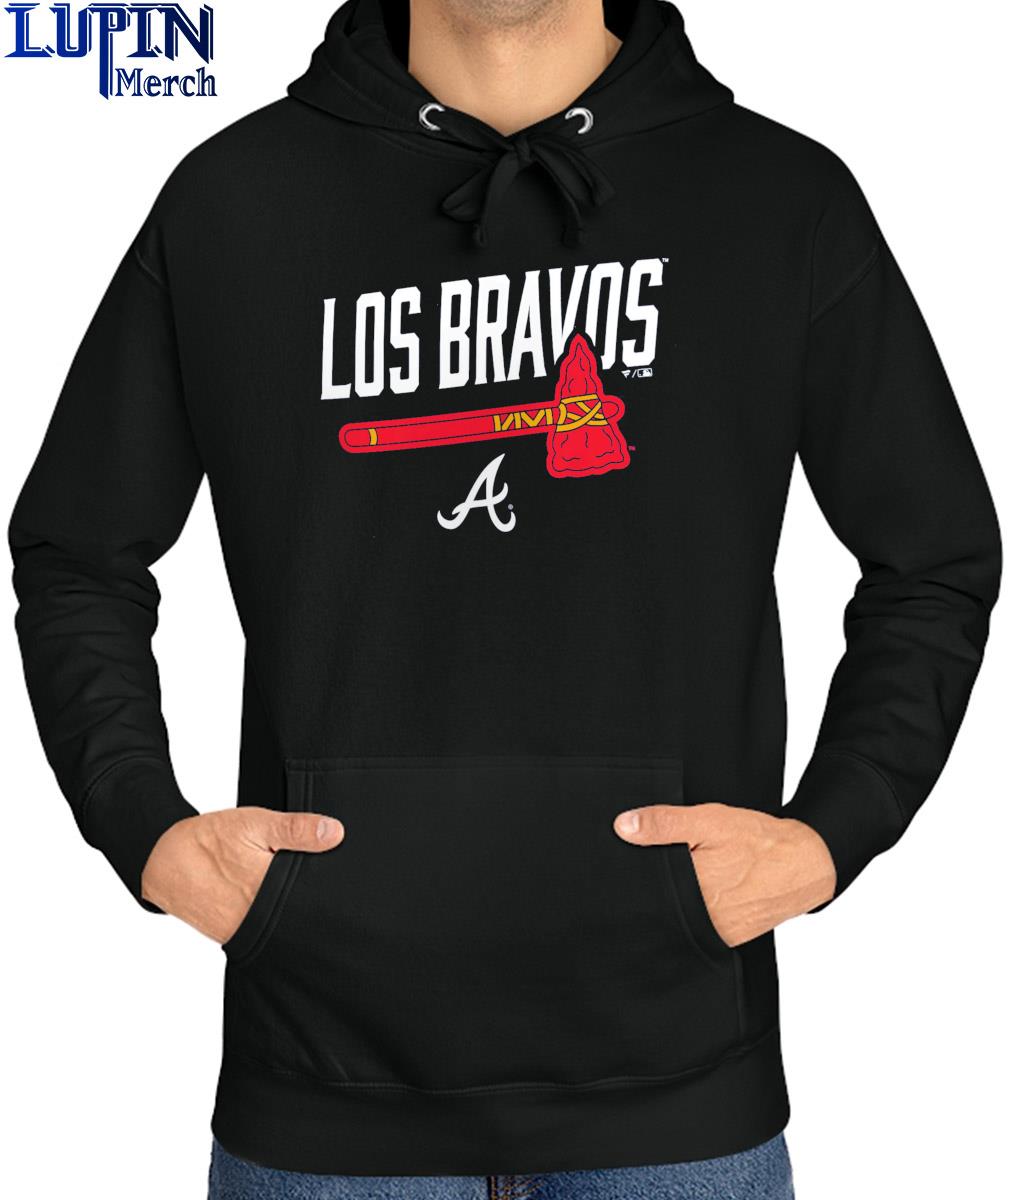 Los Bravos Atlanta Braves T-shirt, hoodie, sweater, long sleeve